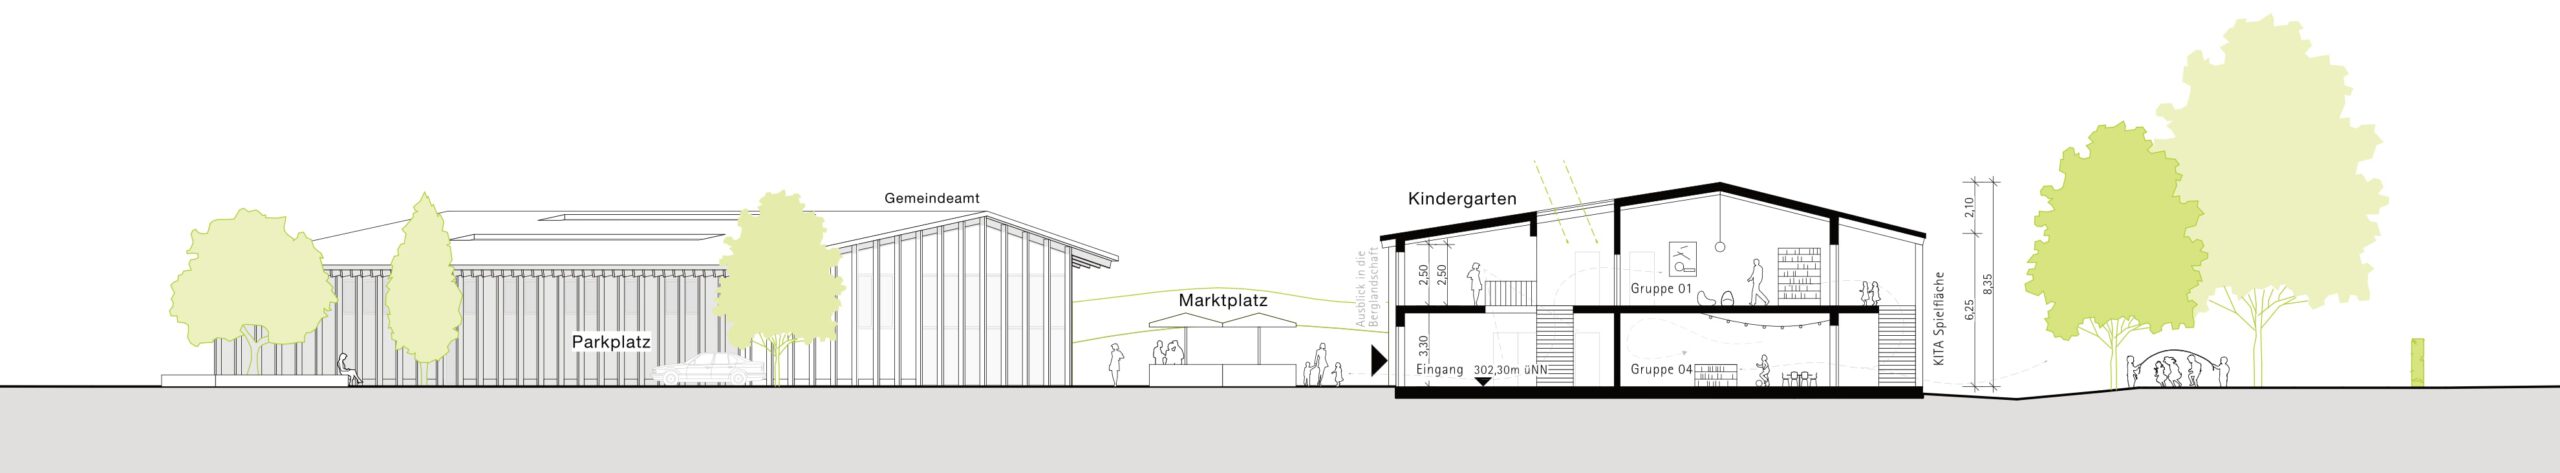 Schnitt Gemeindezentrum Realisierungswettbewerb Architektur Kindergarten KITA Düsseldorf